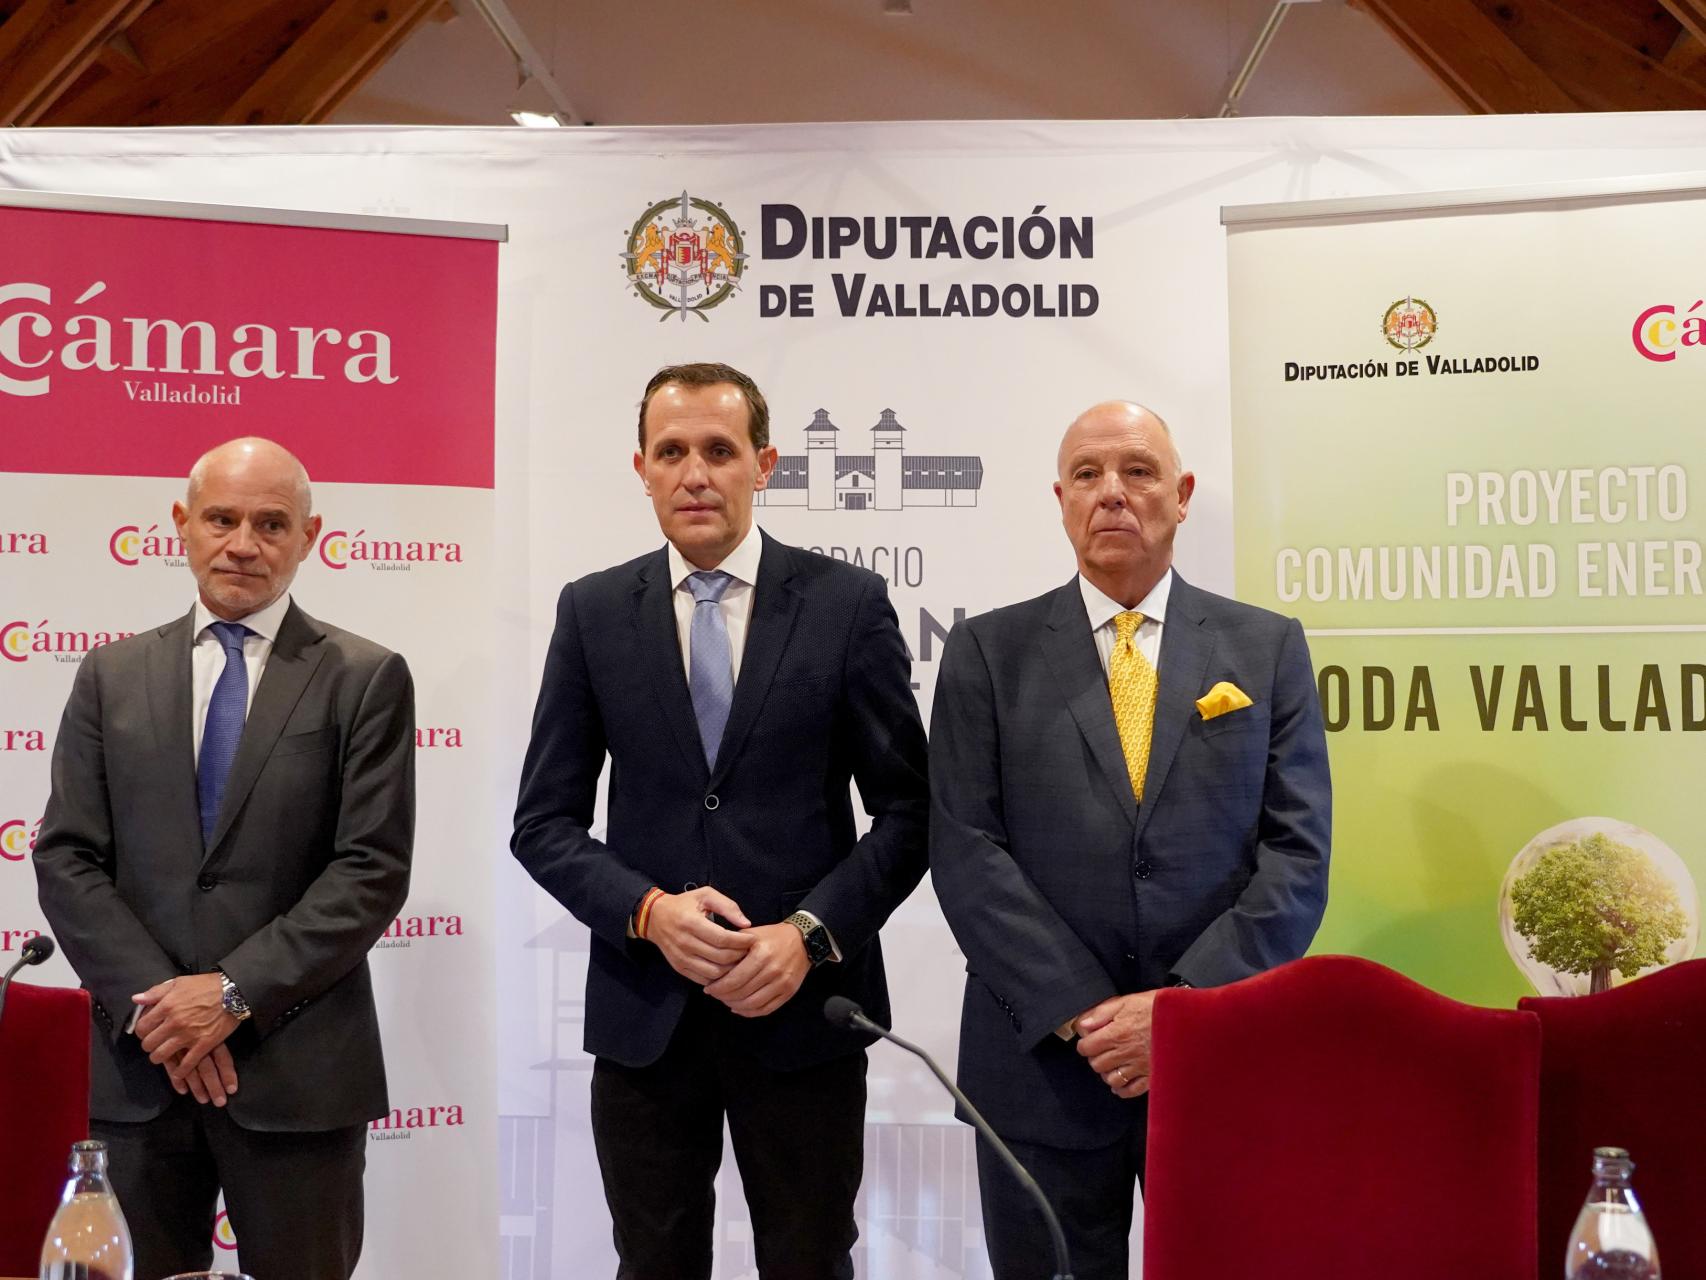 El presidente de la Diputación de Valladolid, Conrado Íscar, durante la presentación del proyecto Comunidad Energética Toda Valladolid, este miércoles.